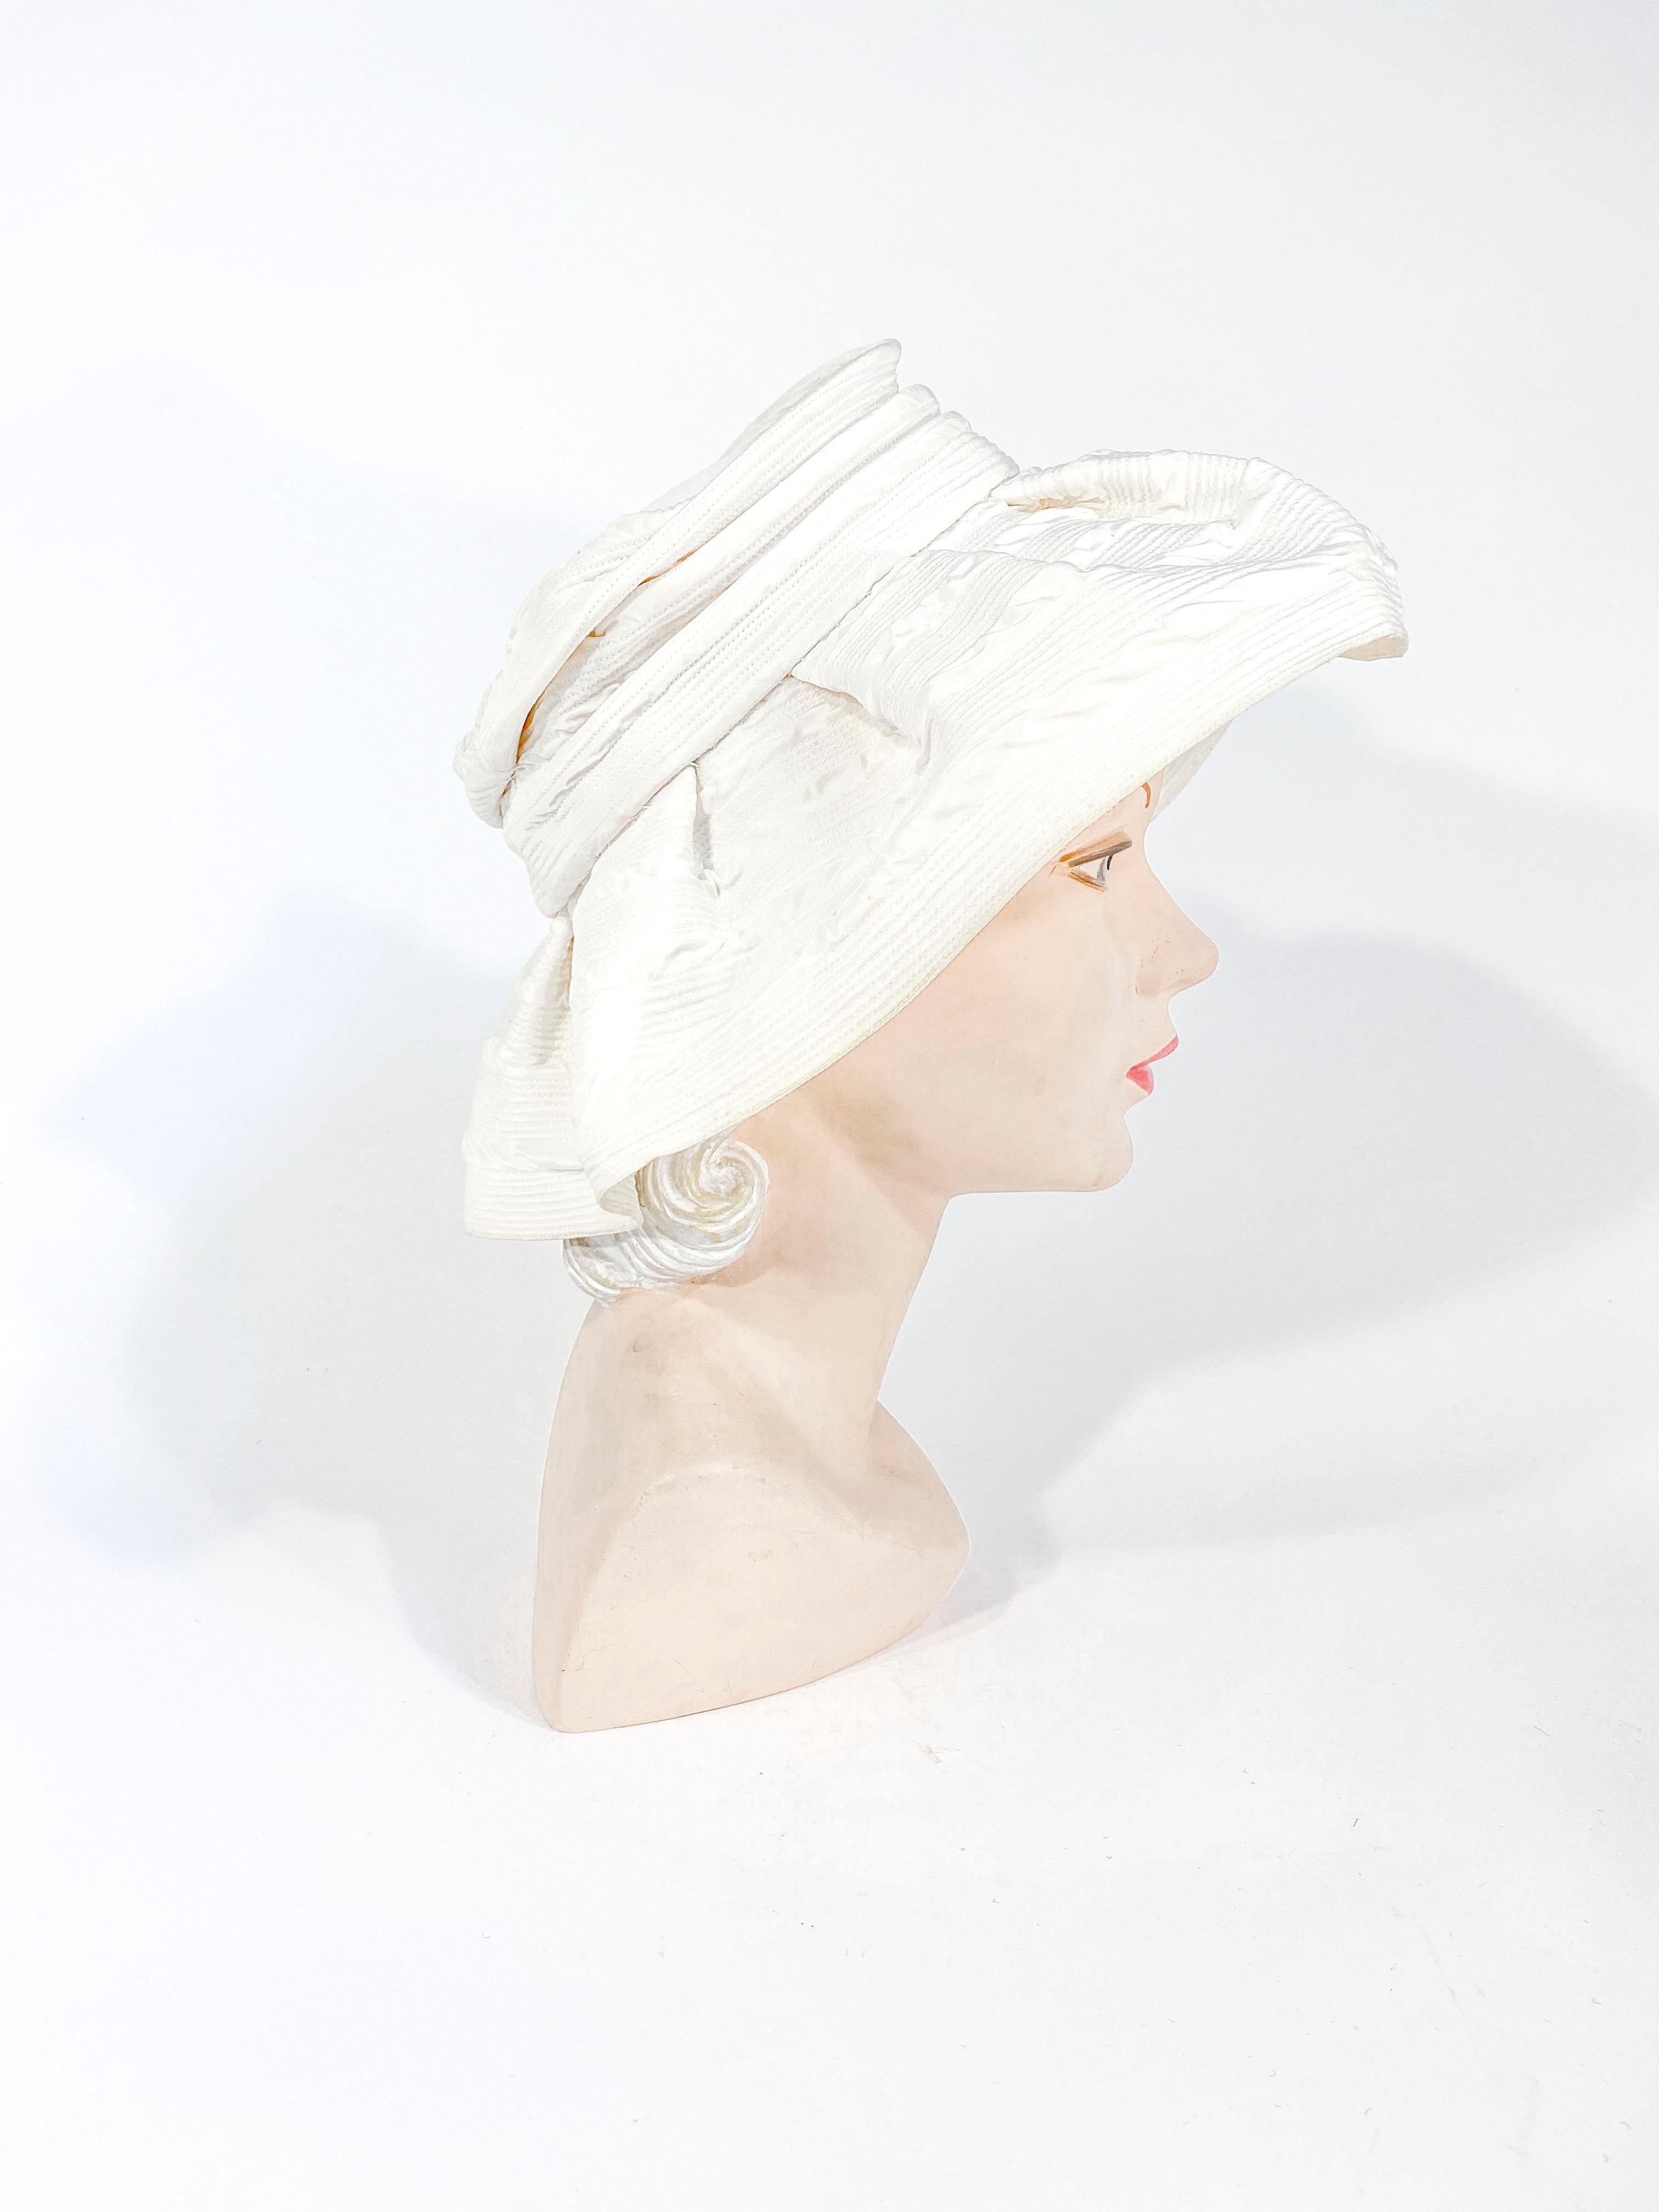 Chapeau de mode blanc cassé des années 1960 avec un large bord non structuré froncé sur la couronne. Le textile de till présente de fines surpiqûres circulaires qui enveloppent le chapeau. 